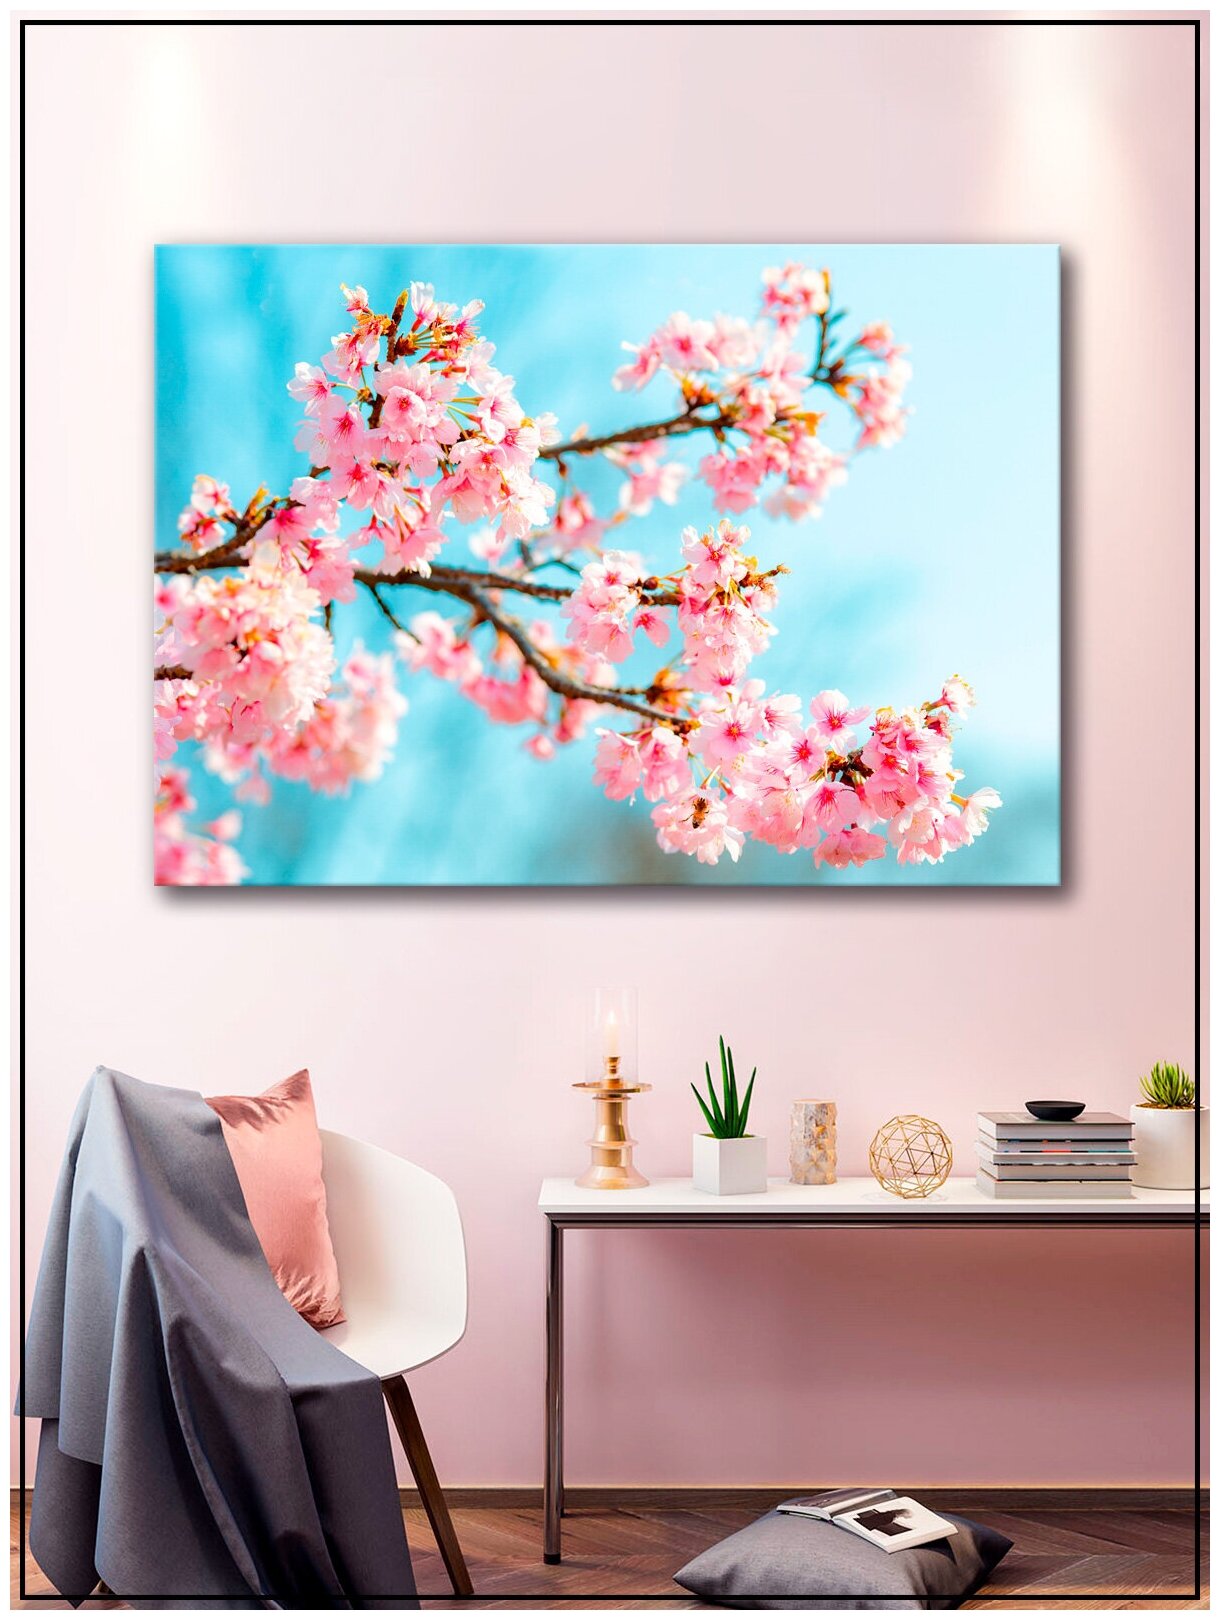 Картина для интерьера на натуральном хлопковом холсте "Ветка сакуры", 30*40см, холст на подрамнике, картина в подарок для дома